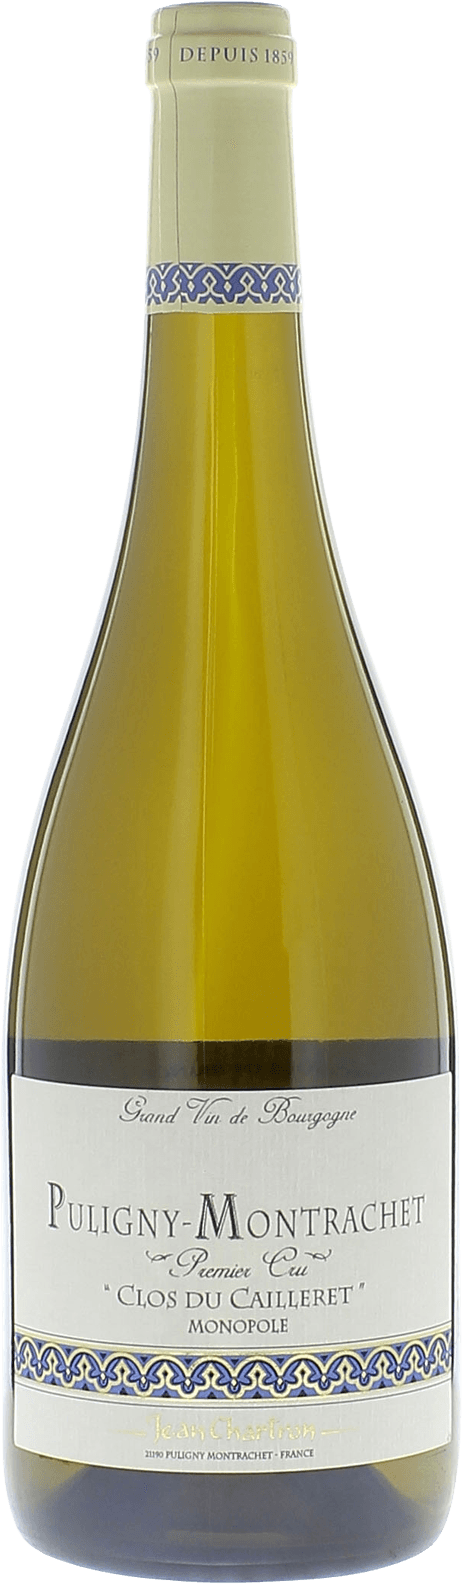 Puligny montrachet 1er cru clos du cailleret 2017 Domaine CHARTRON Jean, Bourgogne blanc